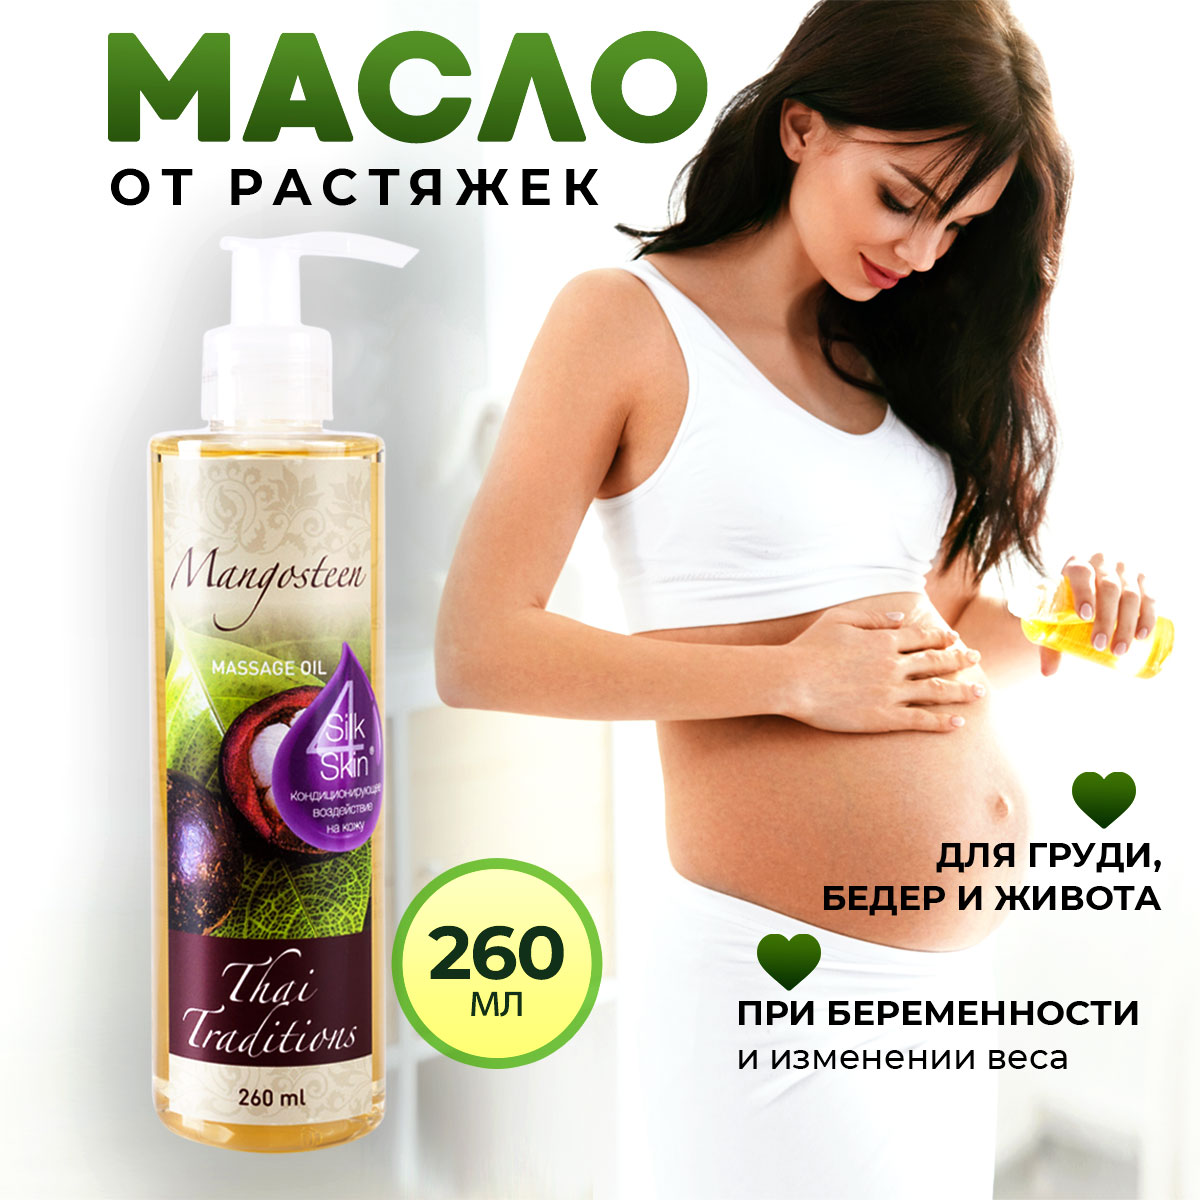 Масло от растяжек тела Thai Traditions для беременных увлажняющее Мангостин 260 мл бессознательное использование своего тела женщиной